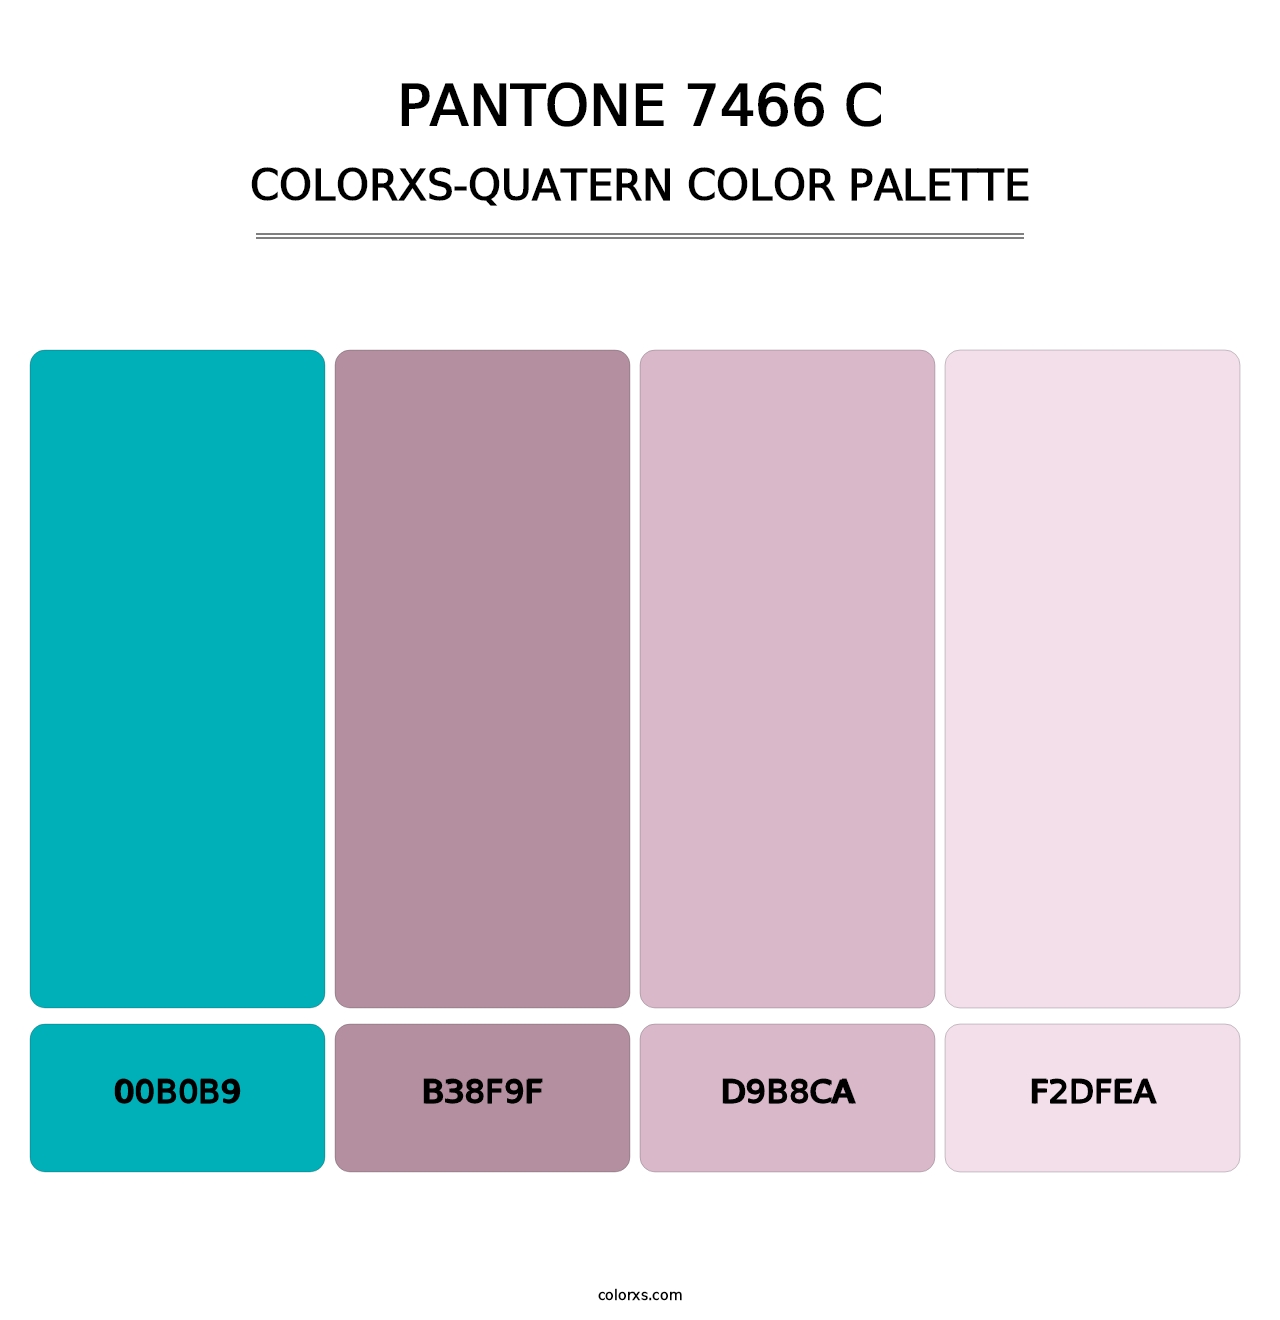 PANTONE 7466 C - Colorxs Quatern Palette